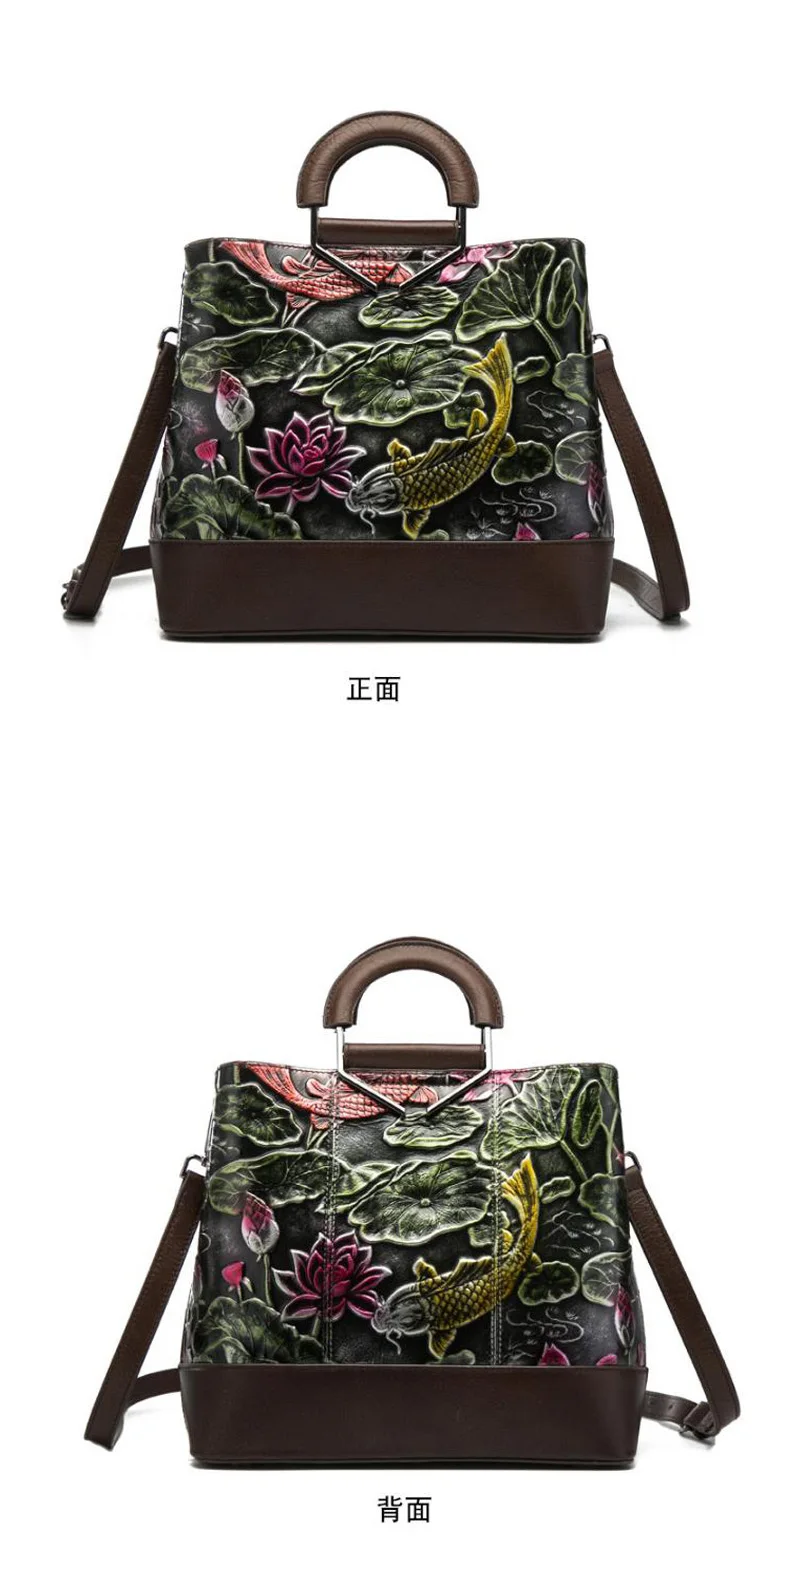 Сумки из натуральной кожи, винтажная женская сумка, цветная тисненая сумка на плечо с рисунком лотоса и рыбы, сумка в китайском стиле, сумка-тоут